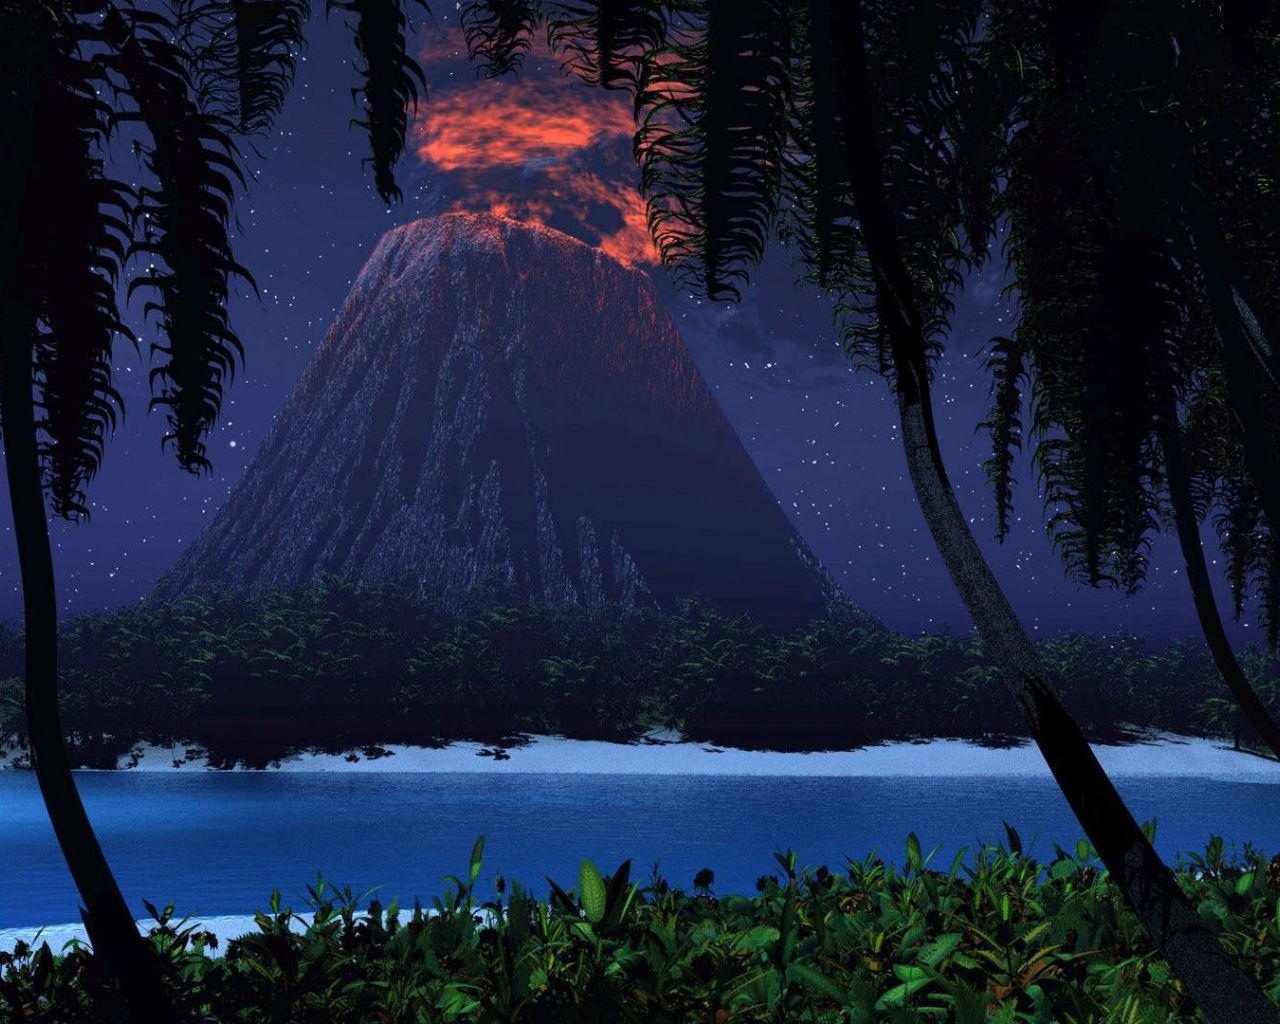 پس زمینه منظره ای از جزیره ای با آتشفشان فعال فانتزی در شب